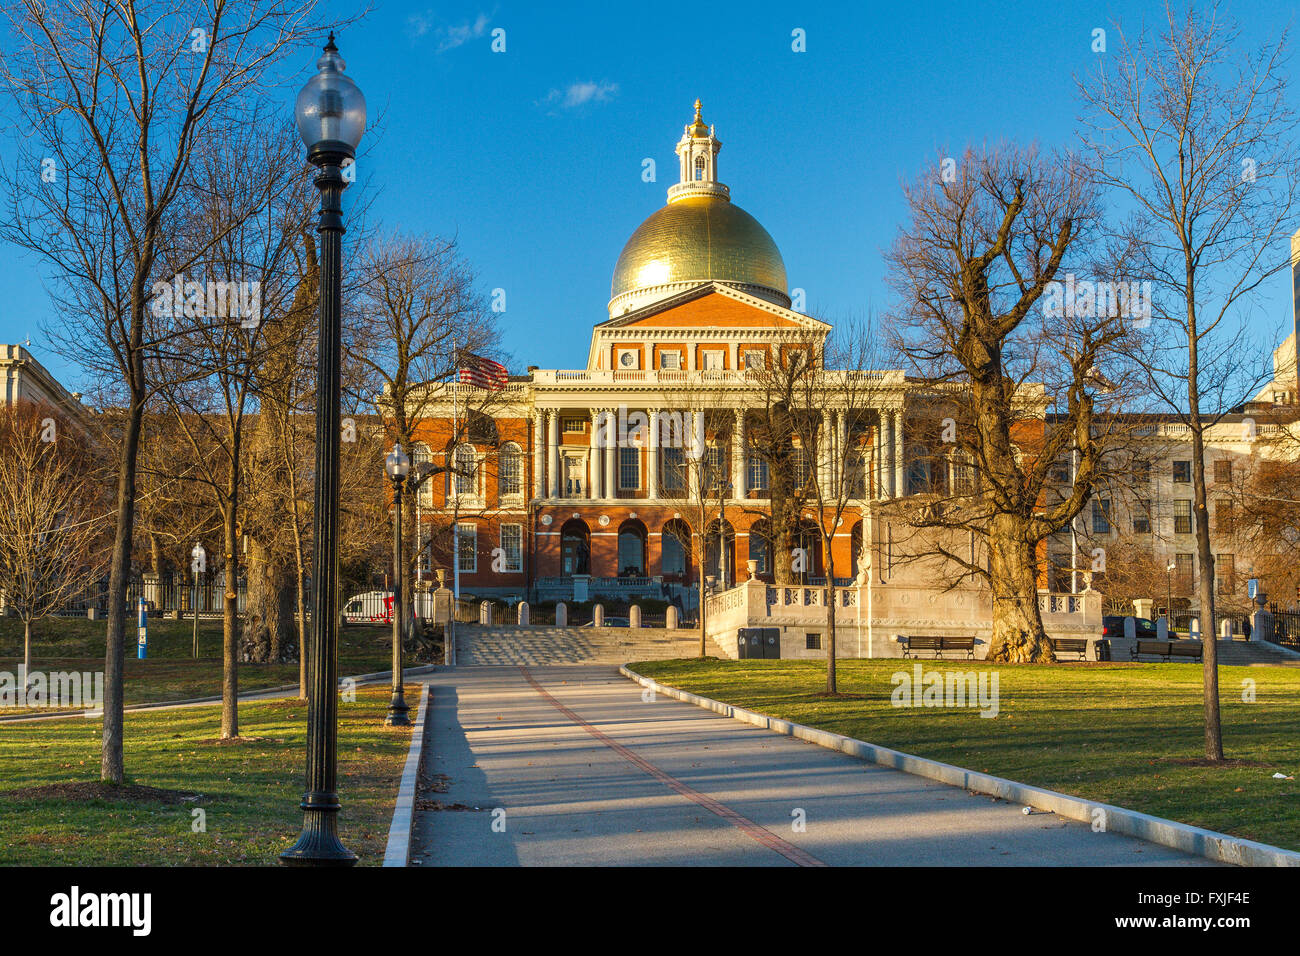 Le dôme doré de la Massachusetts State House, Boston Common, Boston, MA, USA Banque D'Images